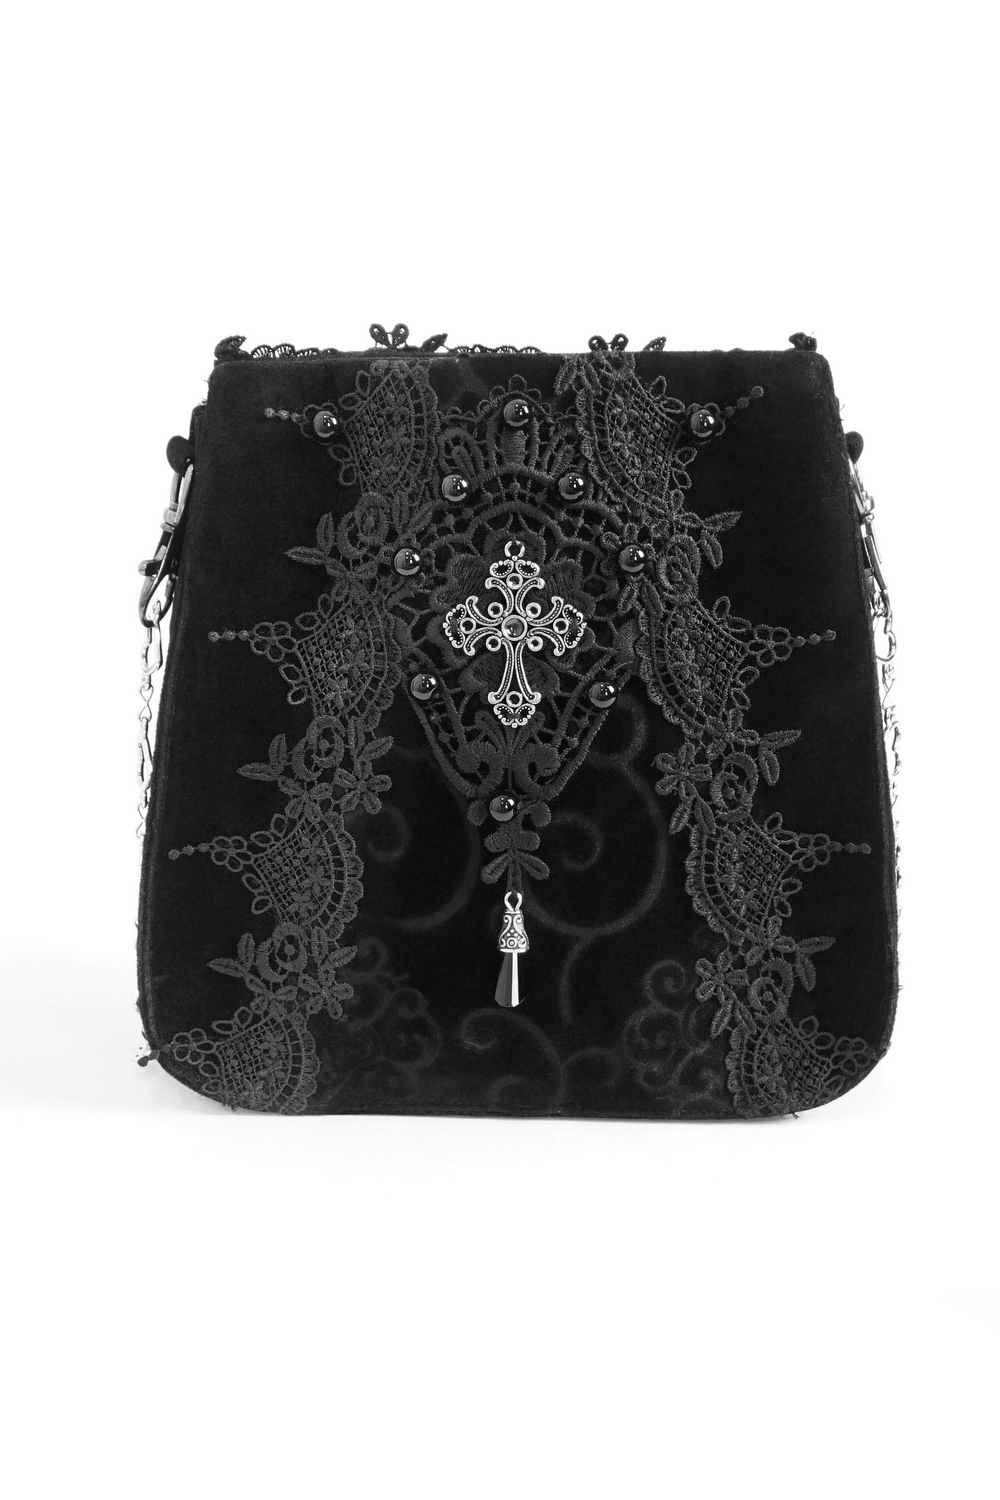 Bolso de hombro bordado floral gótico elegante para mujer